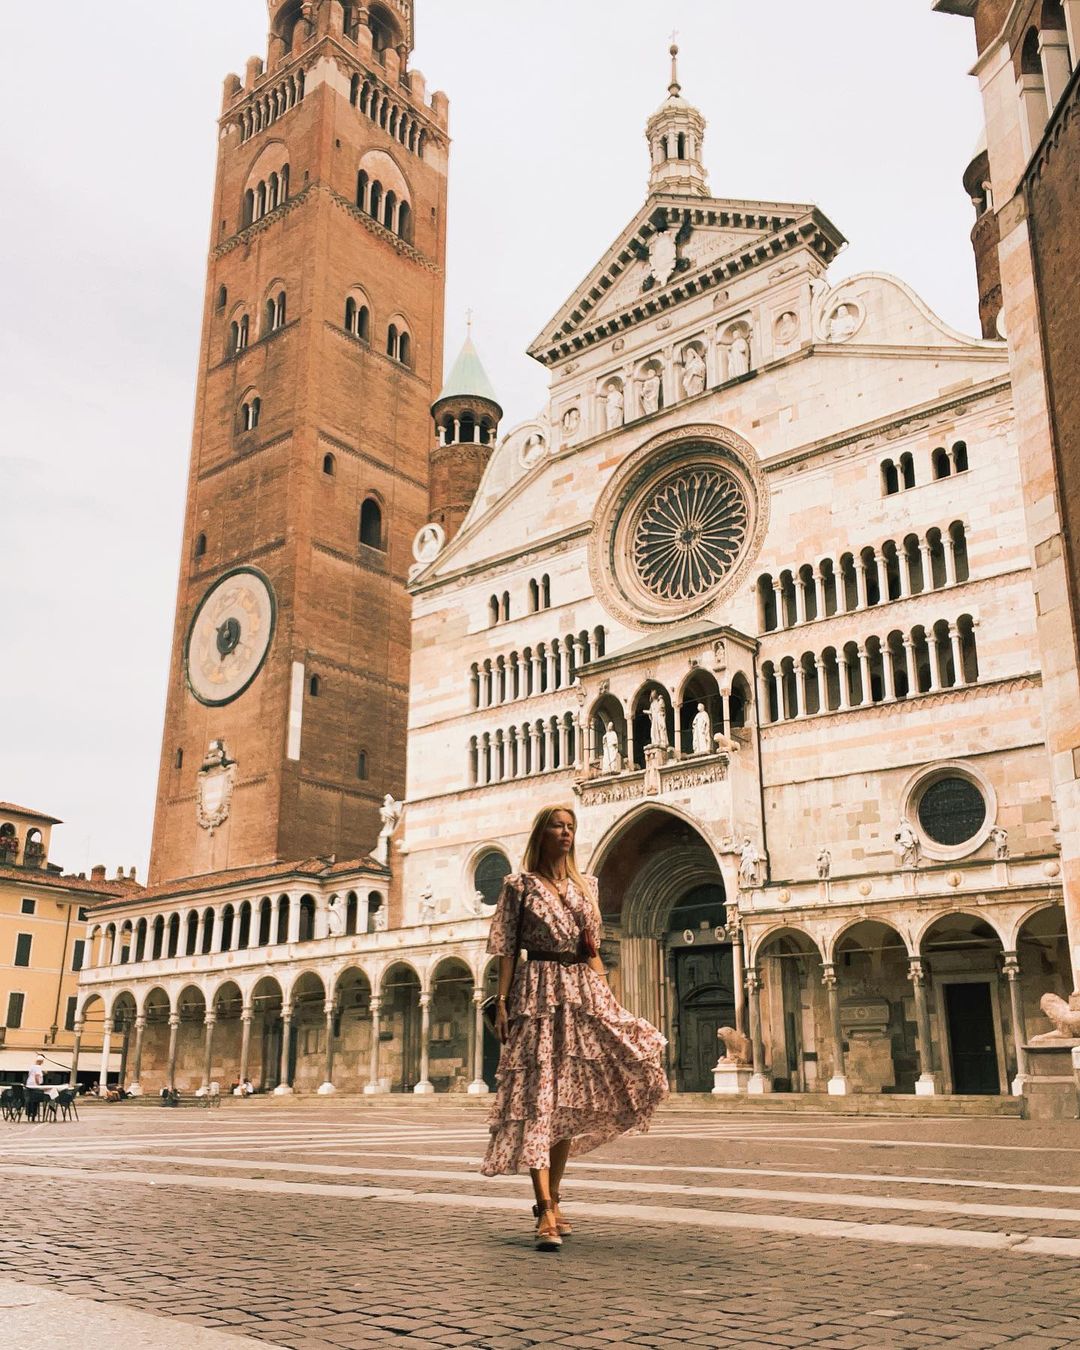 La modella per le strade di Cremona, Italia: condivide con Urcera consigli sui luoghi che vuole visitare in ogni suo viaggio